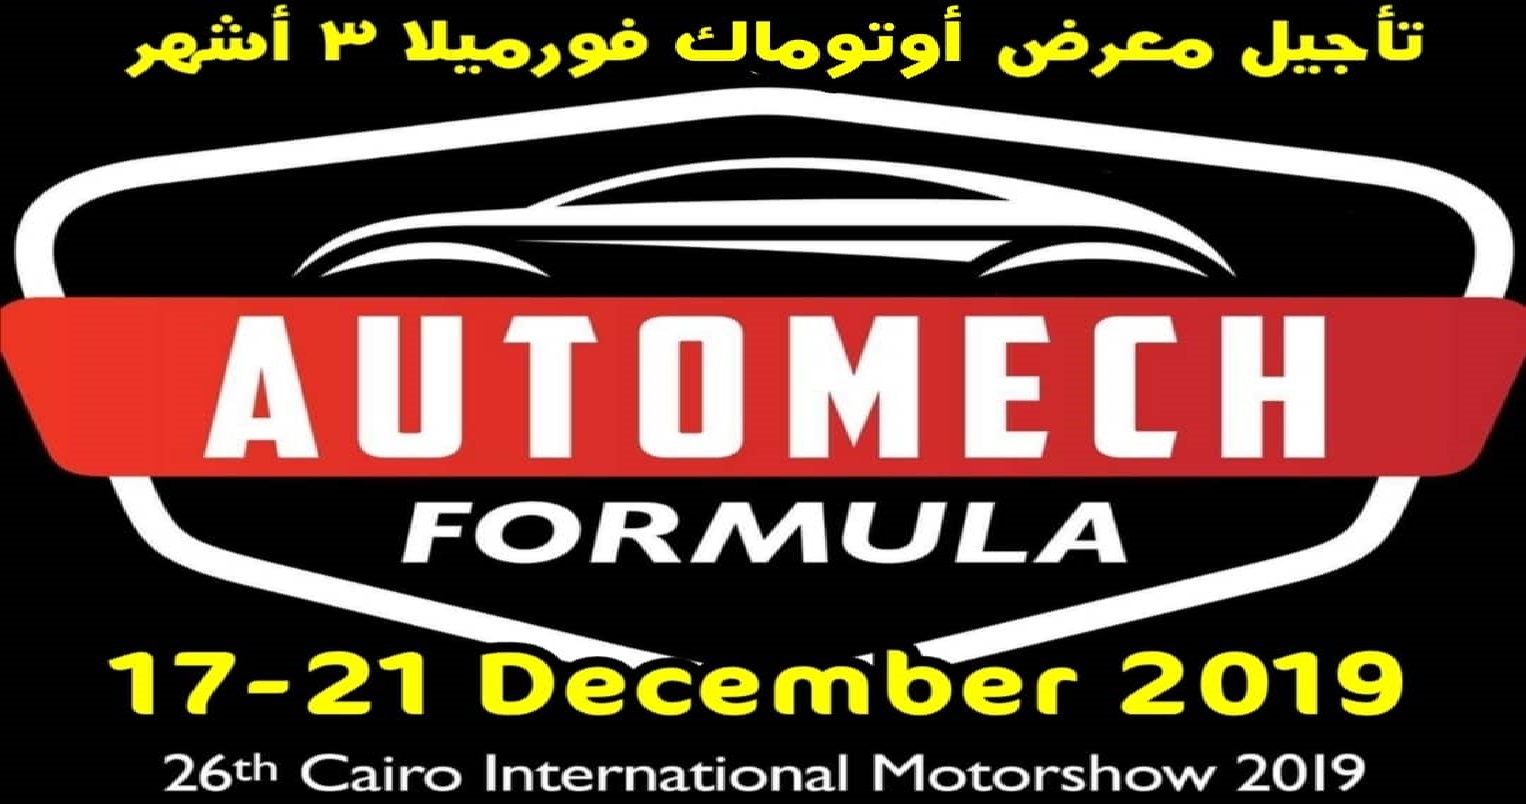 رسمياً… تأجيل الدورة ال26 لمعرض القاهرة الدولى للسيارات “أوتوماك فورميلا” ثلاثة أشهر